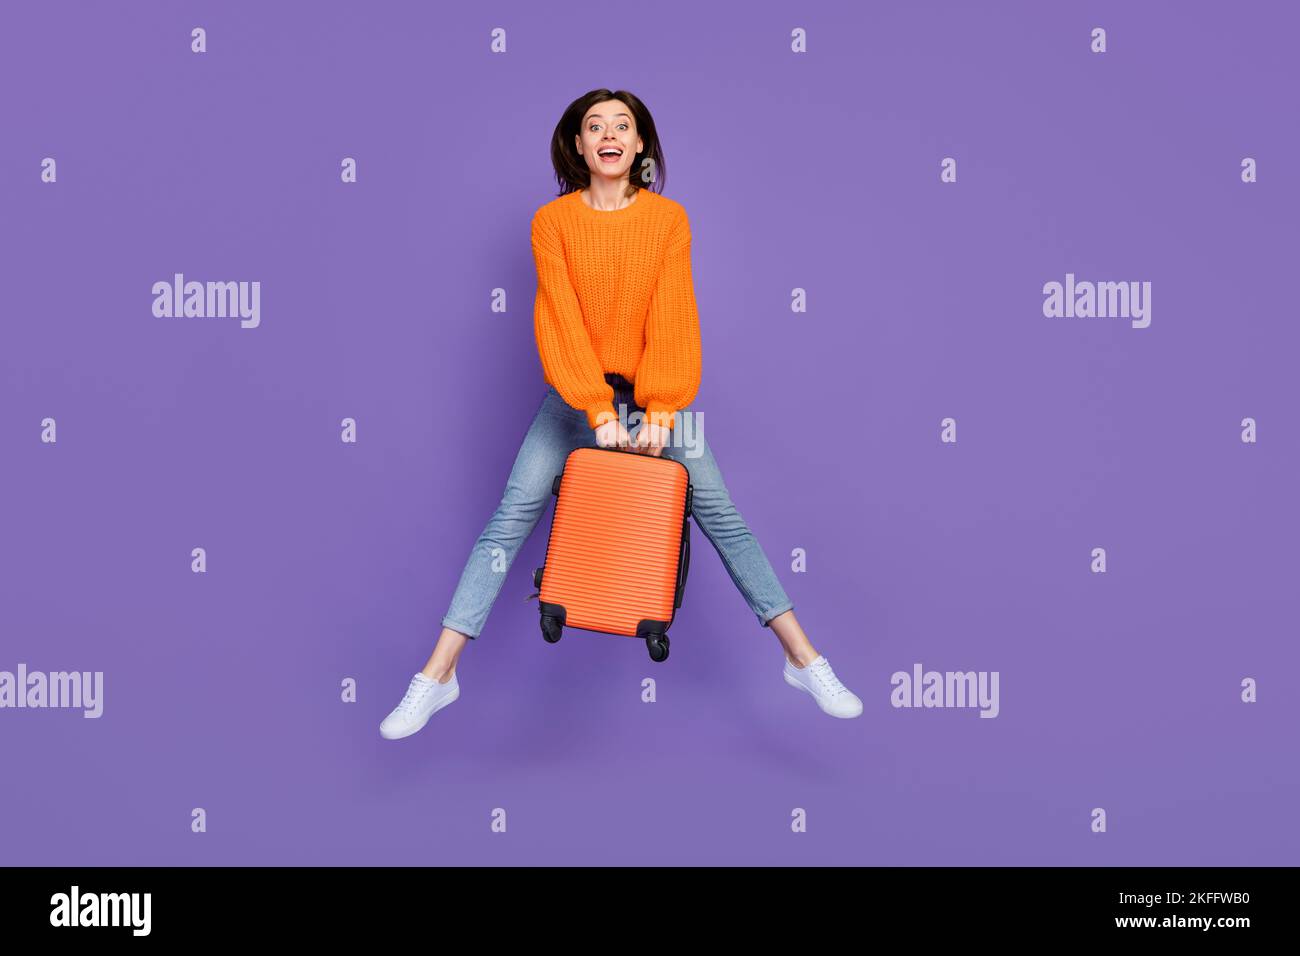 Foto a tutta lunghezza di carino giovane donna che salta bagaglio da viaggio vestita elegante abito a maglia arancione isolato su sfondo di colore viola Foto Stock